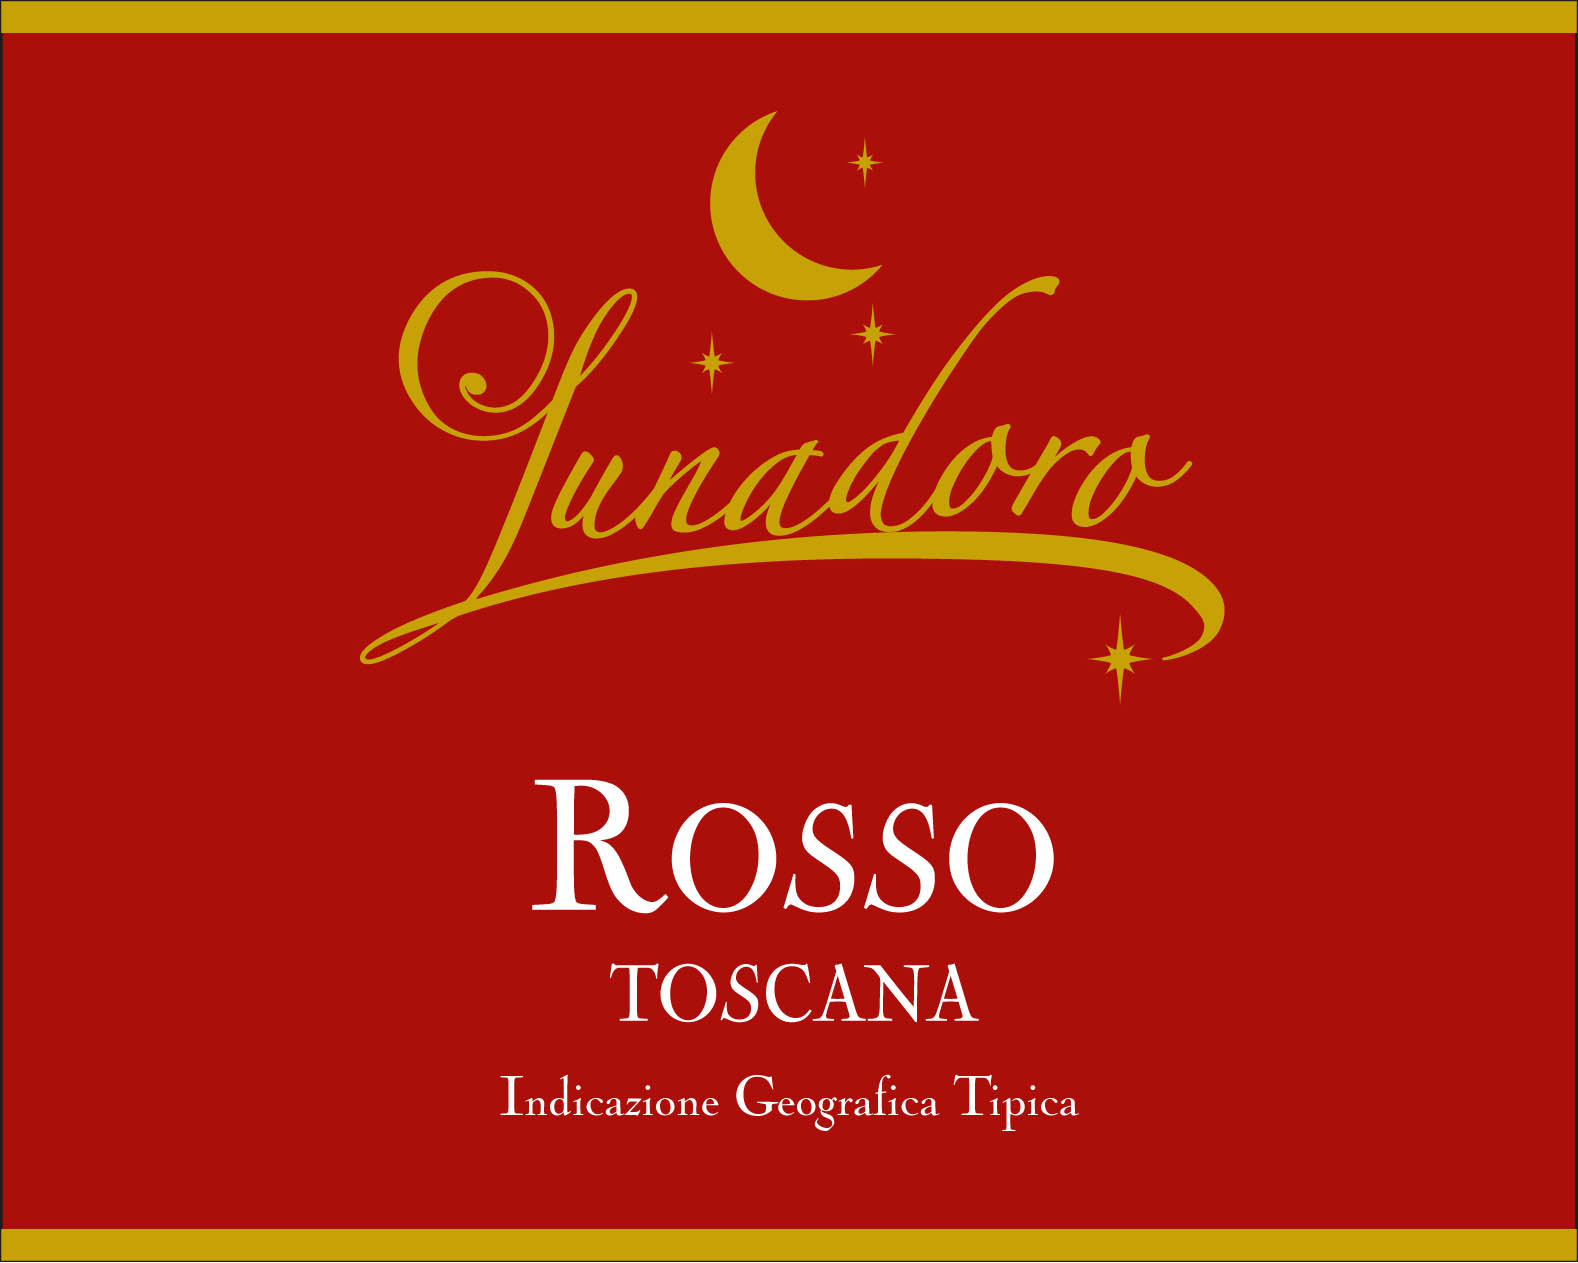 Lunadoro Ricordo Rosso Toscana IGT